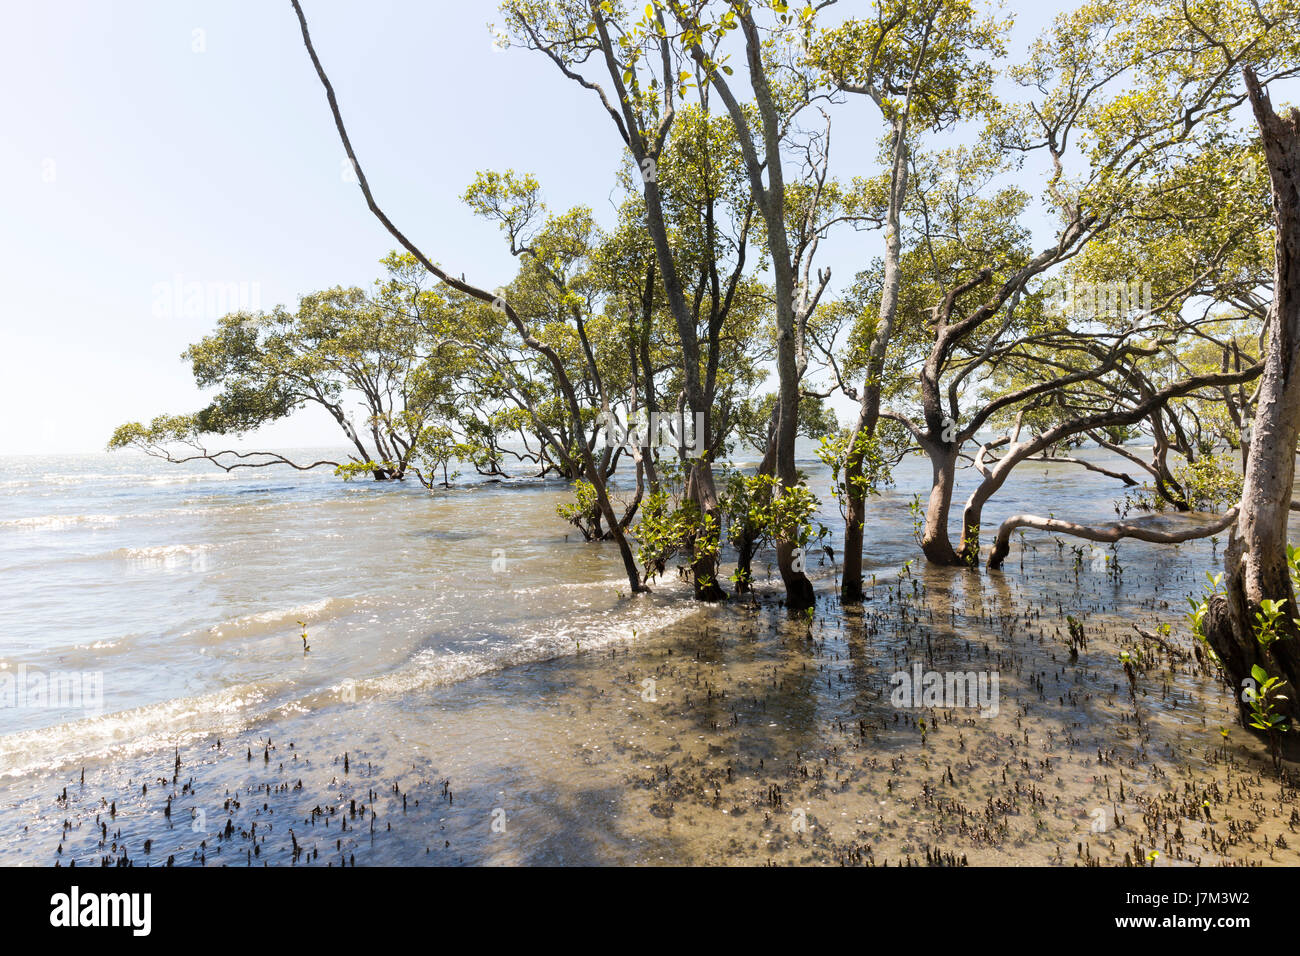 Alberi di mangrovie sulla baia. Foto Stock